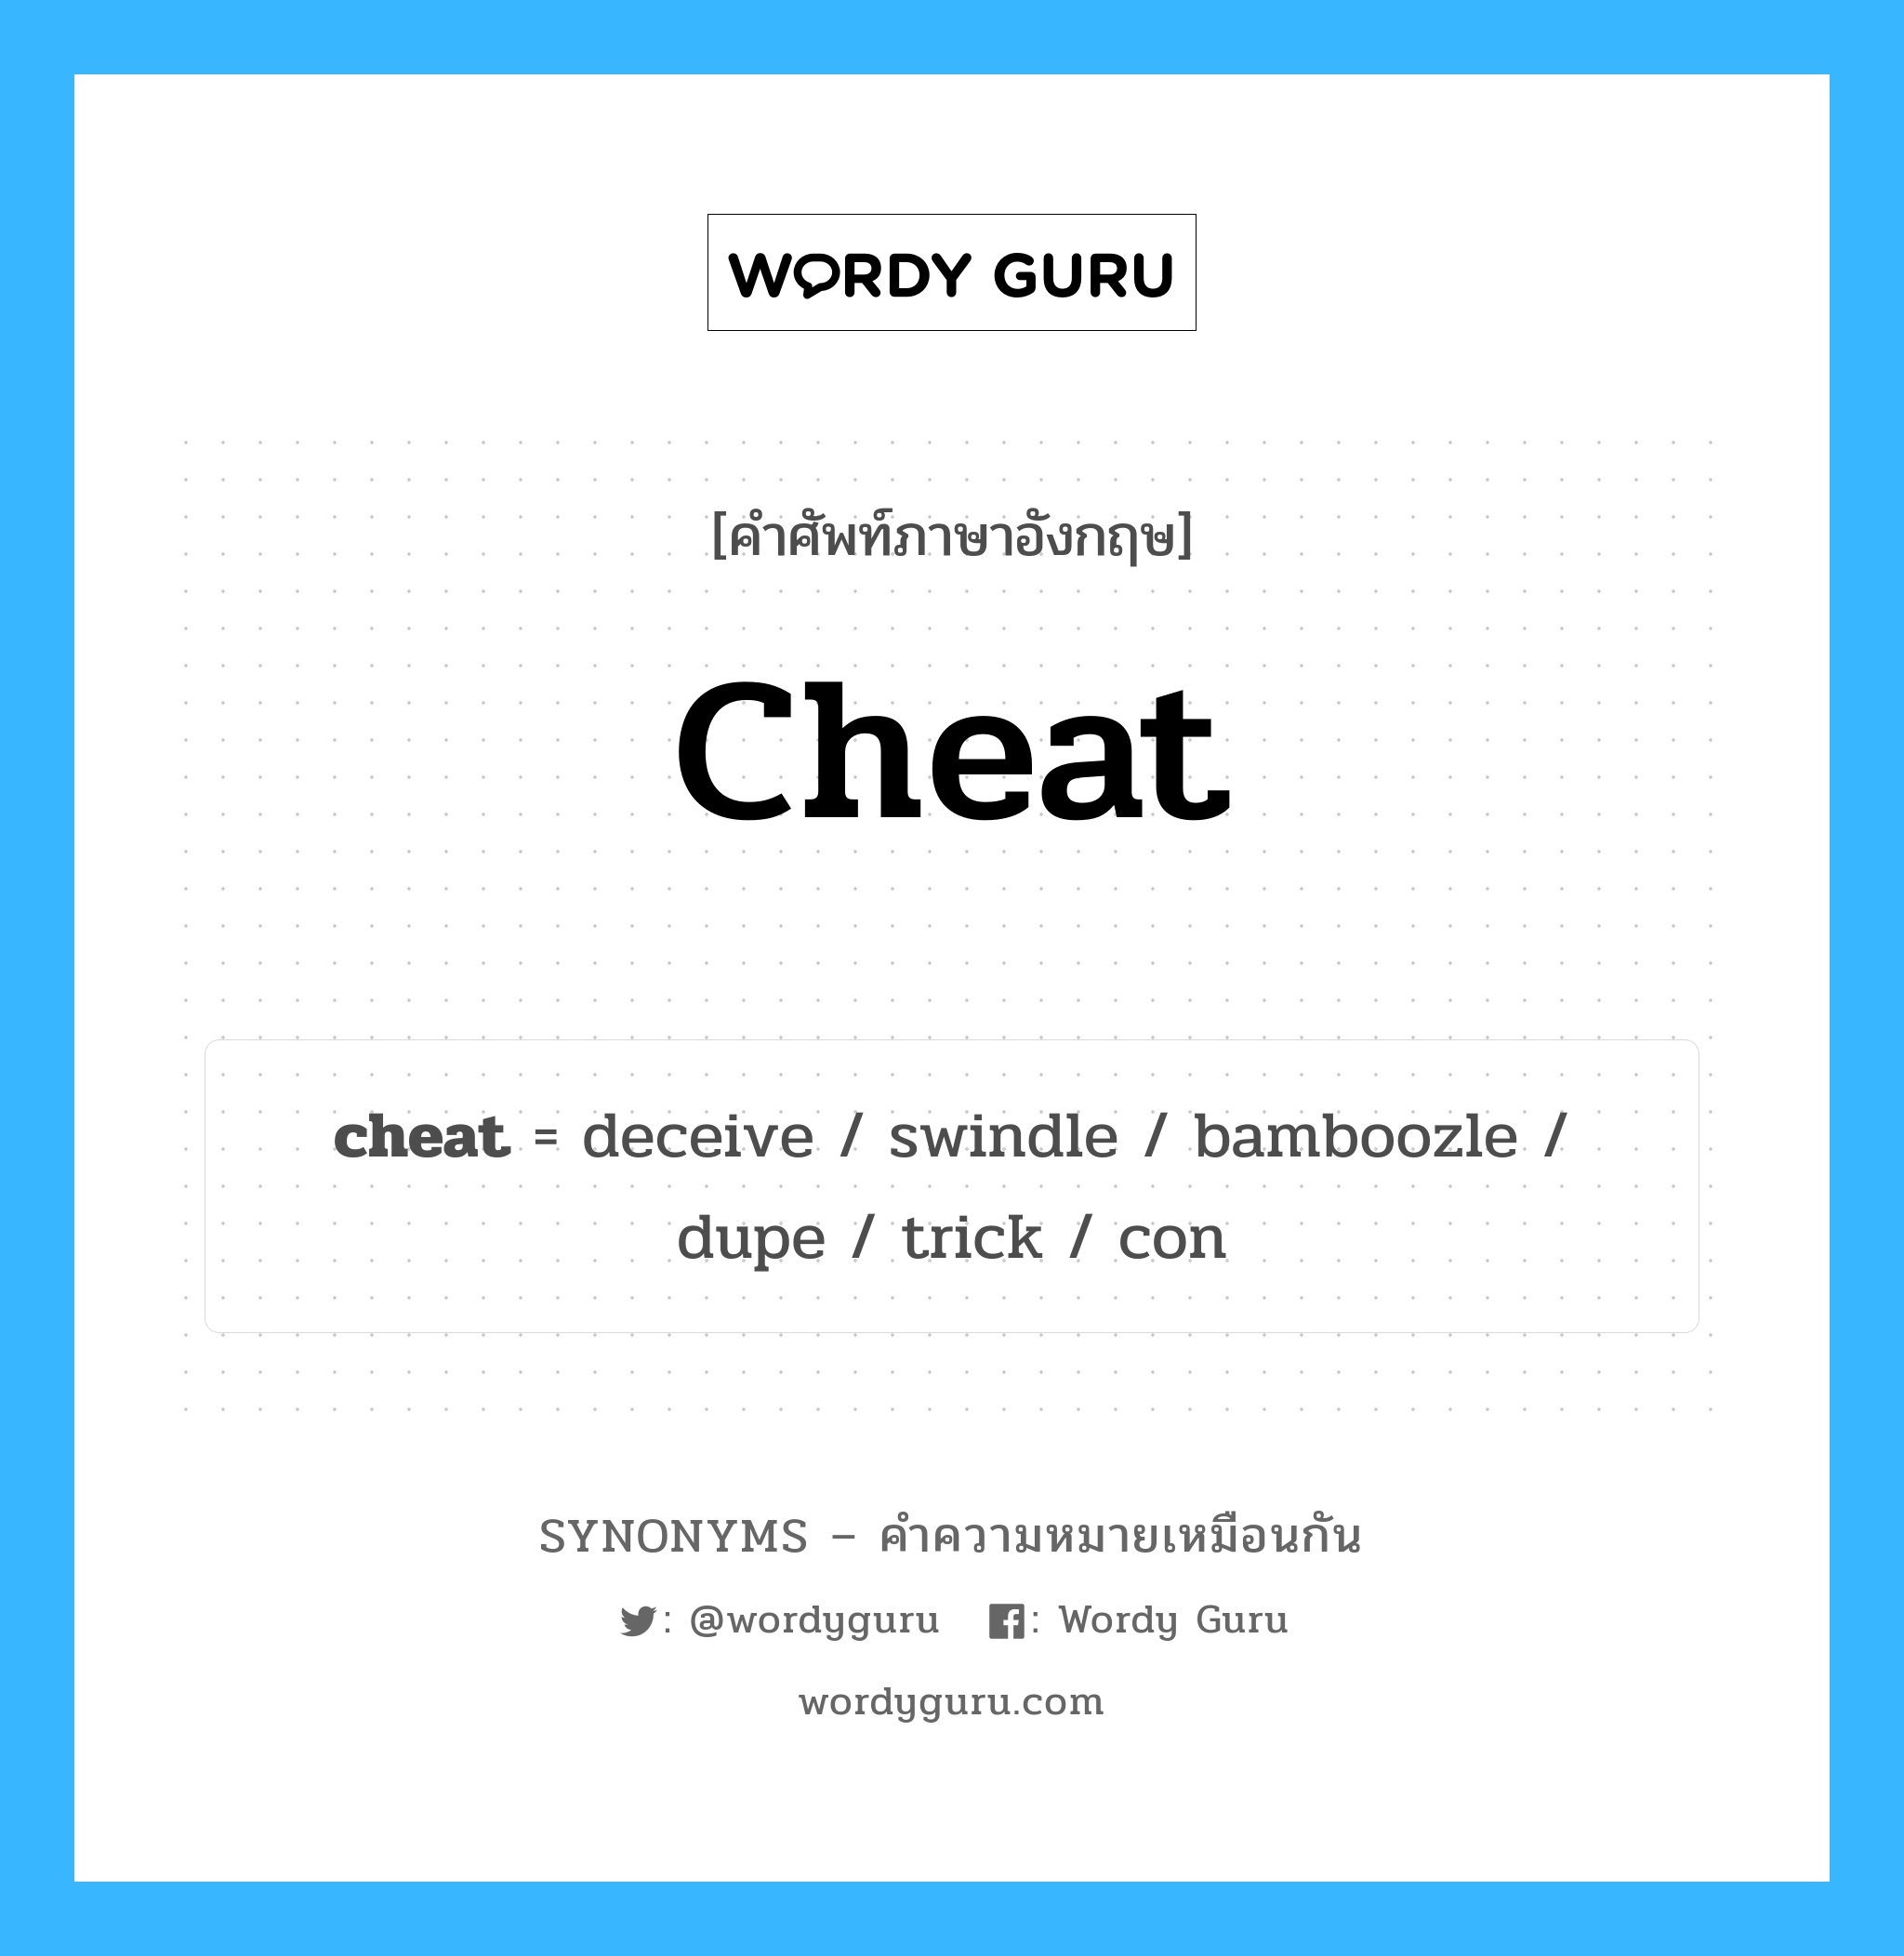 con เป็นหนึ่งใน cheat และมีคำอื่น ๆ อีกดังนี้, คำศัพท์ภาษาอังกฤษ con ความหมายคล้ายกันกับ cheat แปลว่า คอนดิชั่น หมวด cheat